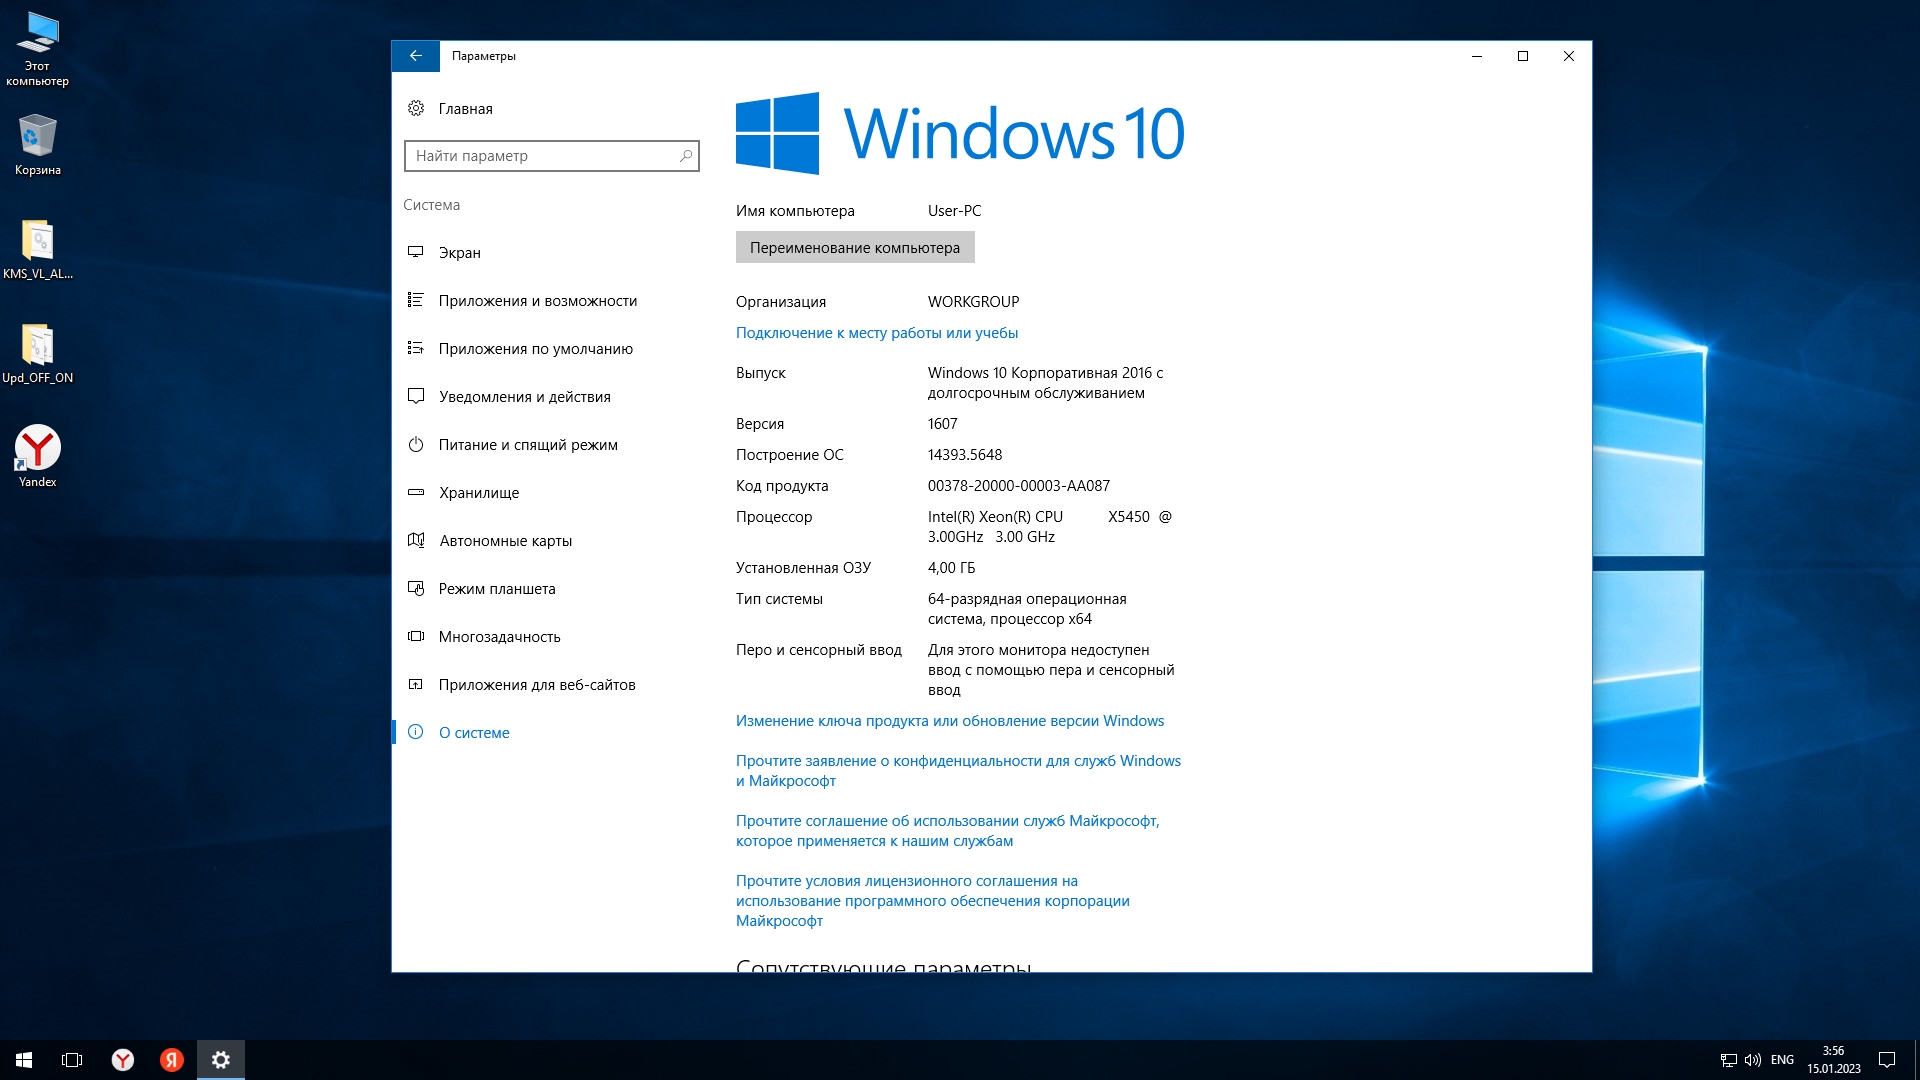 Легкая windows 10 для слабых. Windows 10 версии. Windows 10 LTSB 1607 2016 x64 оригинальный. 64-Разрядная Операционная система, процессор x64. Редакции виндовс 10.